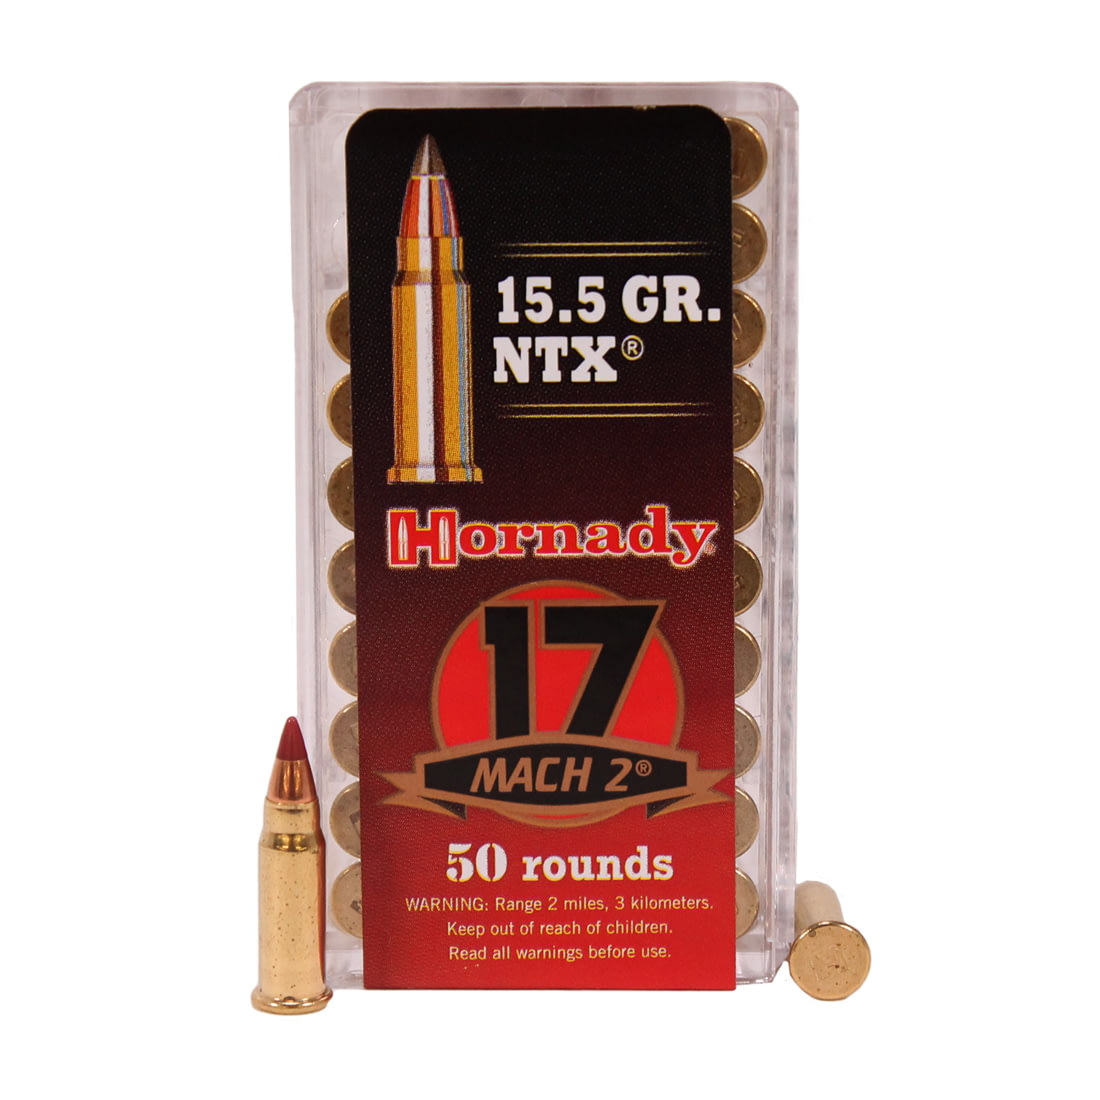 Hornady Rimfire Varmint Express .17 Hornady Mach 2 15.5 grain NTX Rimfire Ammunition